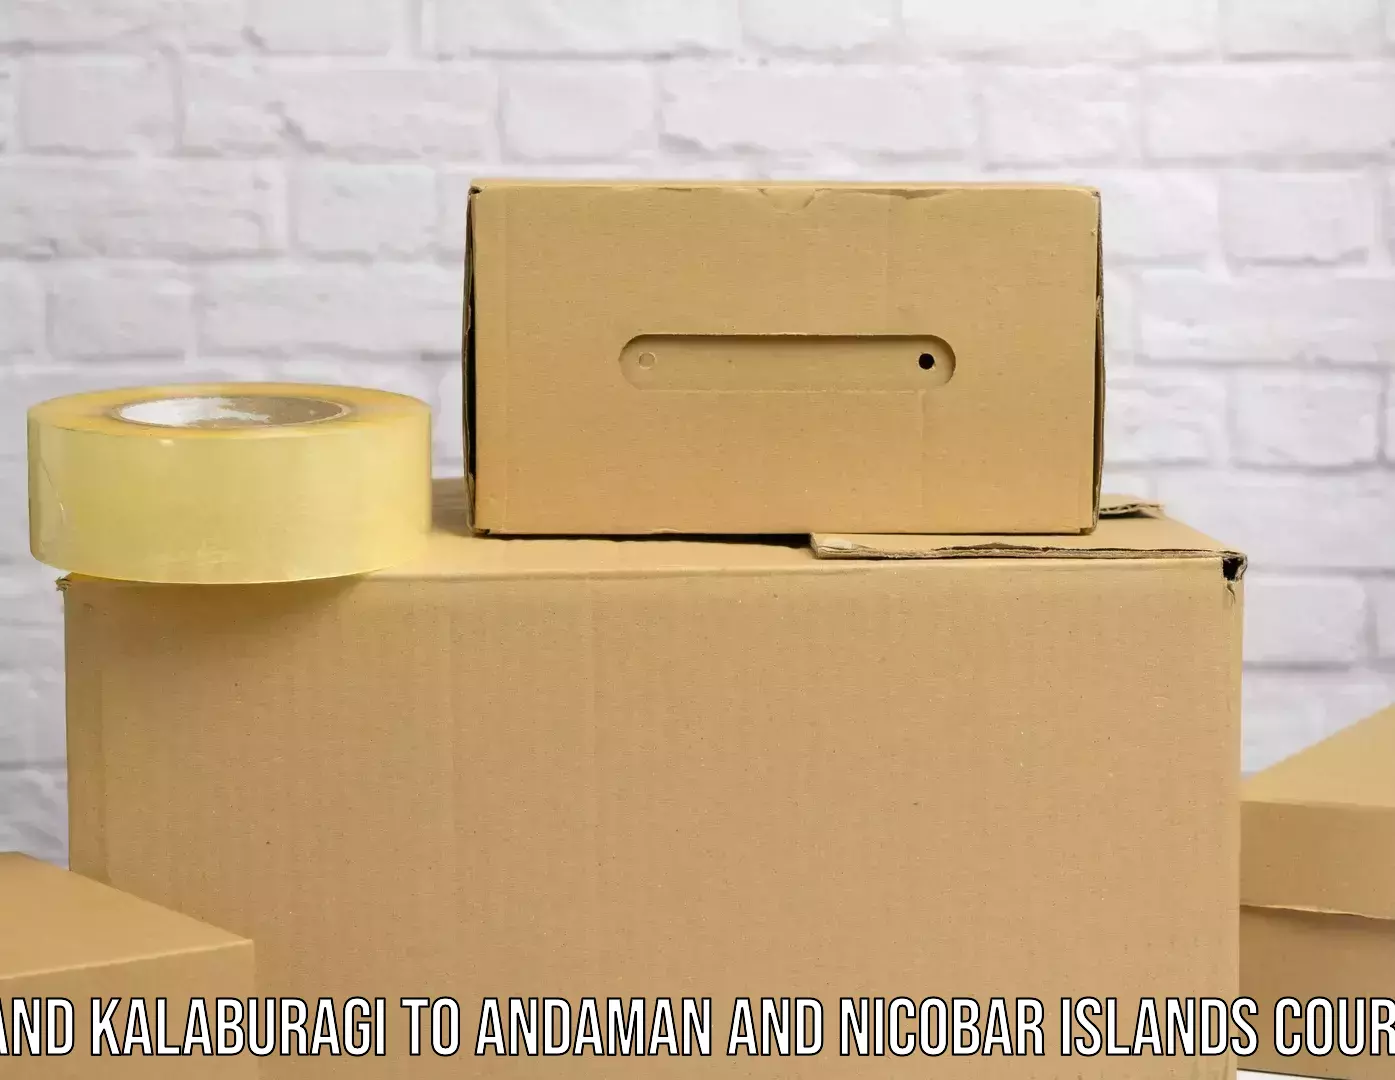 Smart logistics strategies Aland Kalaburagi to Nicobar